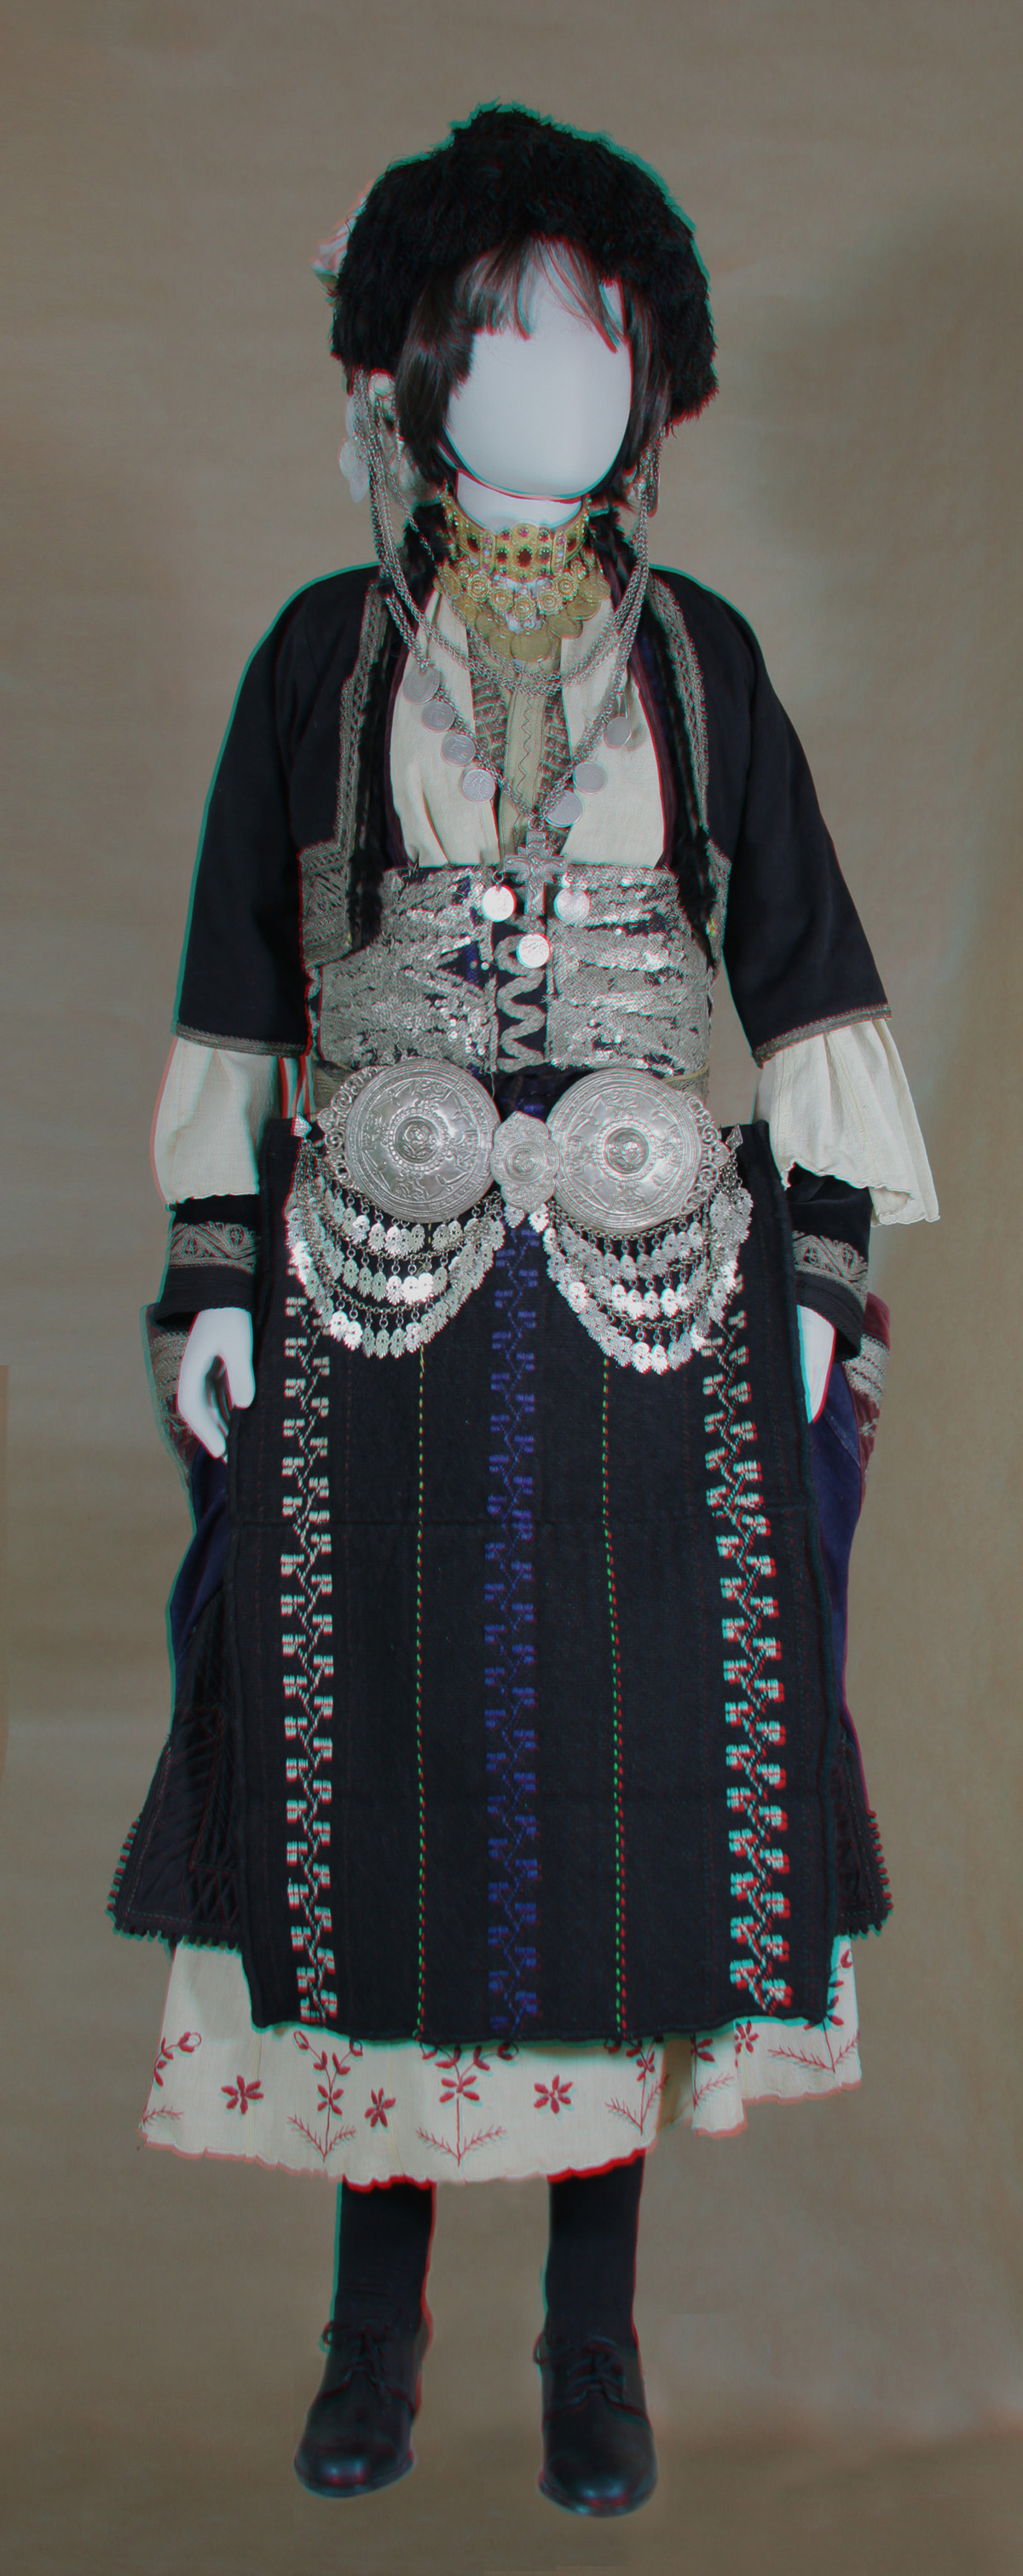 Κούκλα με γυναικεία φορεσιά από Ρουμλούκι Ν. Ημαθίας (δυνατότητα εστίασης στο κεφάλι) (από την αίθουσα Κεντρικής και Ανατολικής Μακεδονίας)